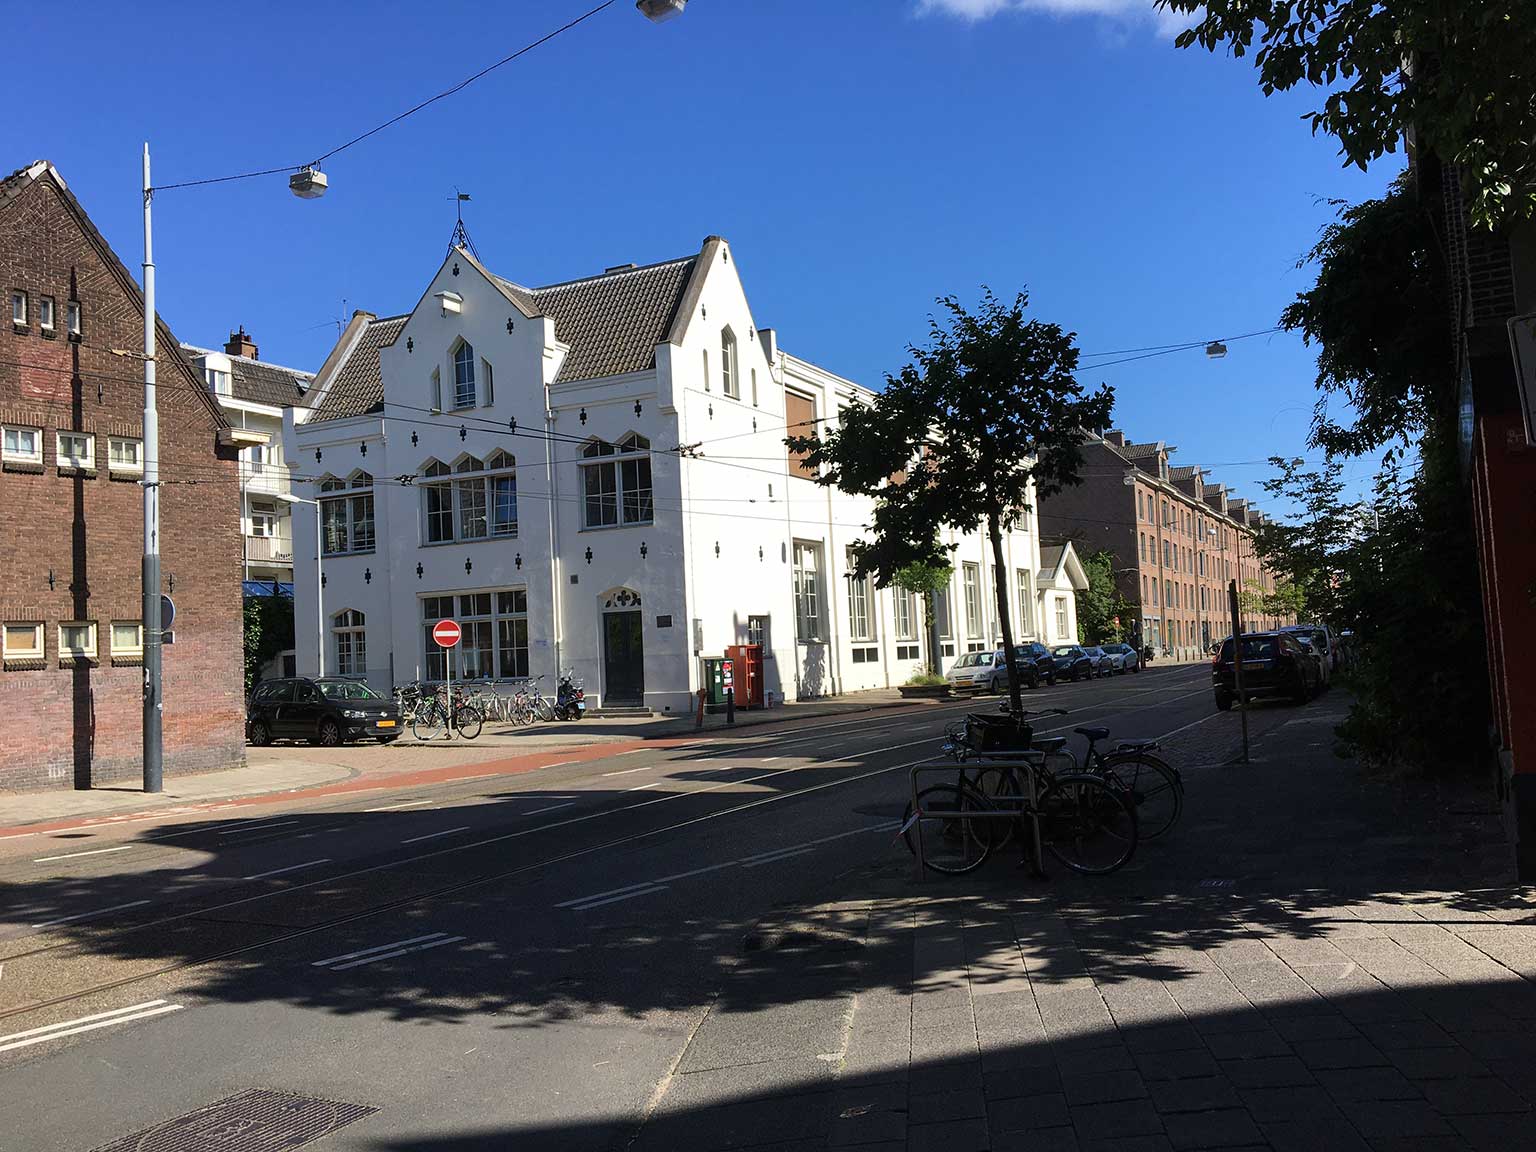 Planciusstraat, Amsterdam, looking north towards the corner of the Schiemanstraat